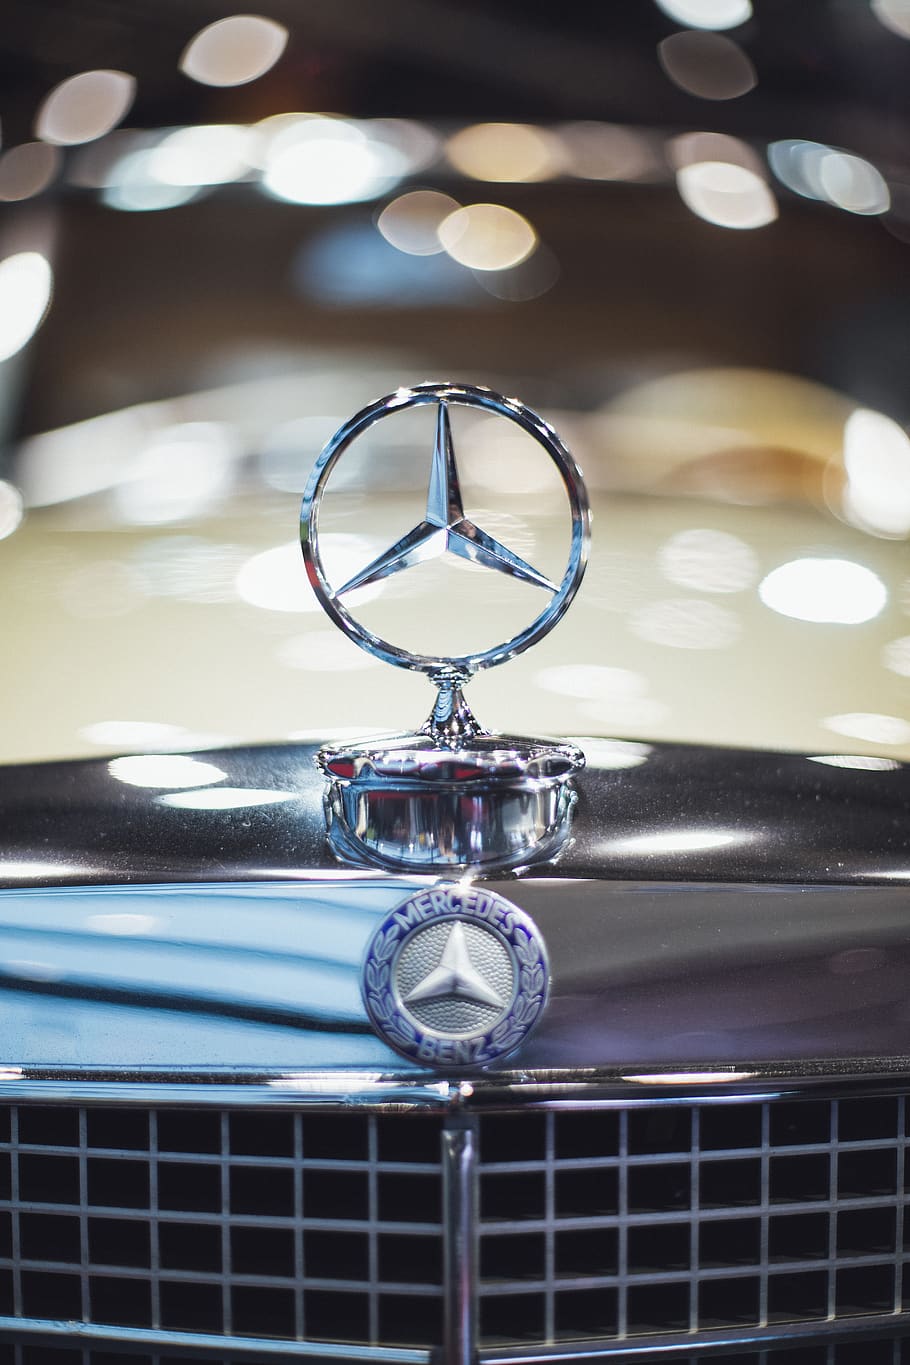 Mercedes Benz Logo, car, close-up, emblem, macro, vehicle, metal, HD wallpaper